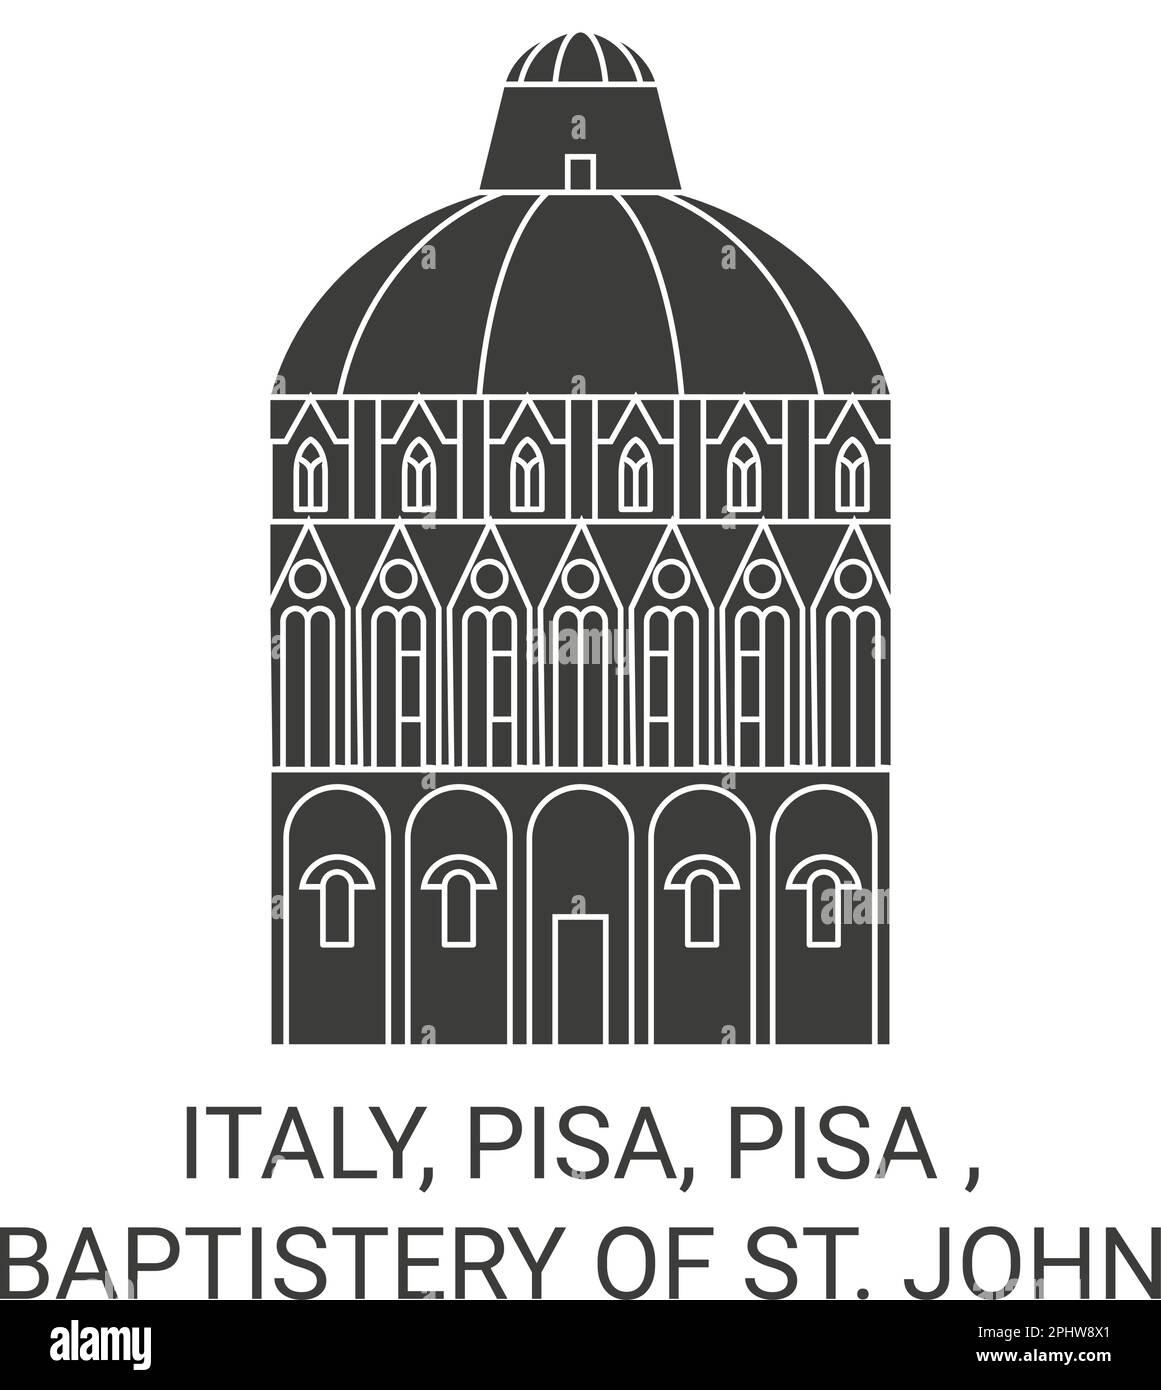 Italien, Pisa, Pisa, Baptisterium Von St. John Travel Landmark-Vektordarstellung Stock Vektor